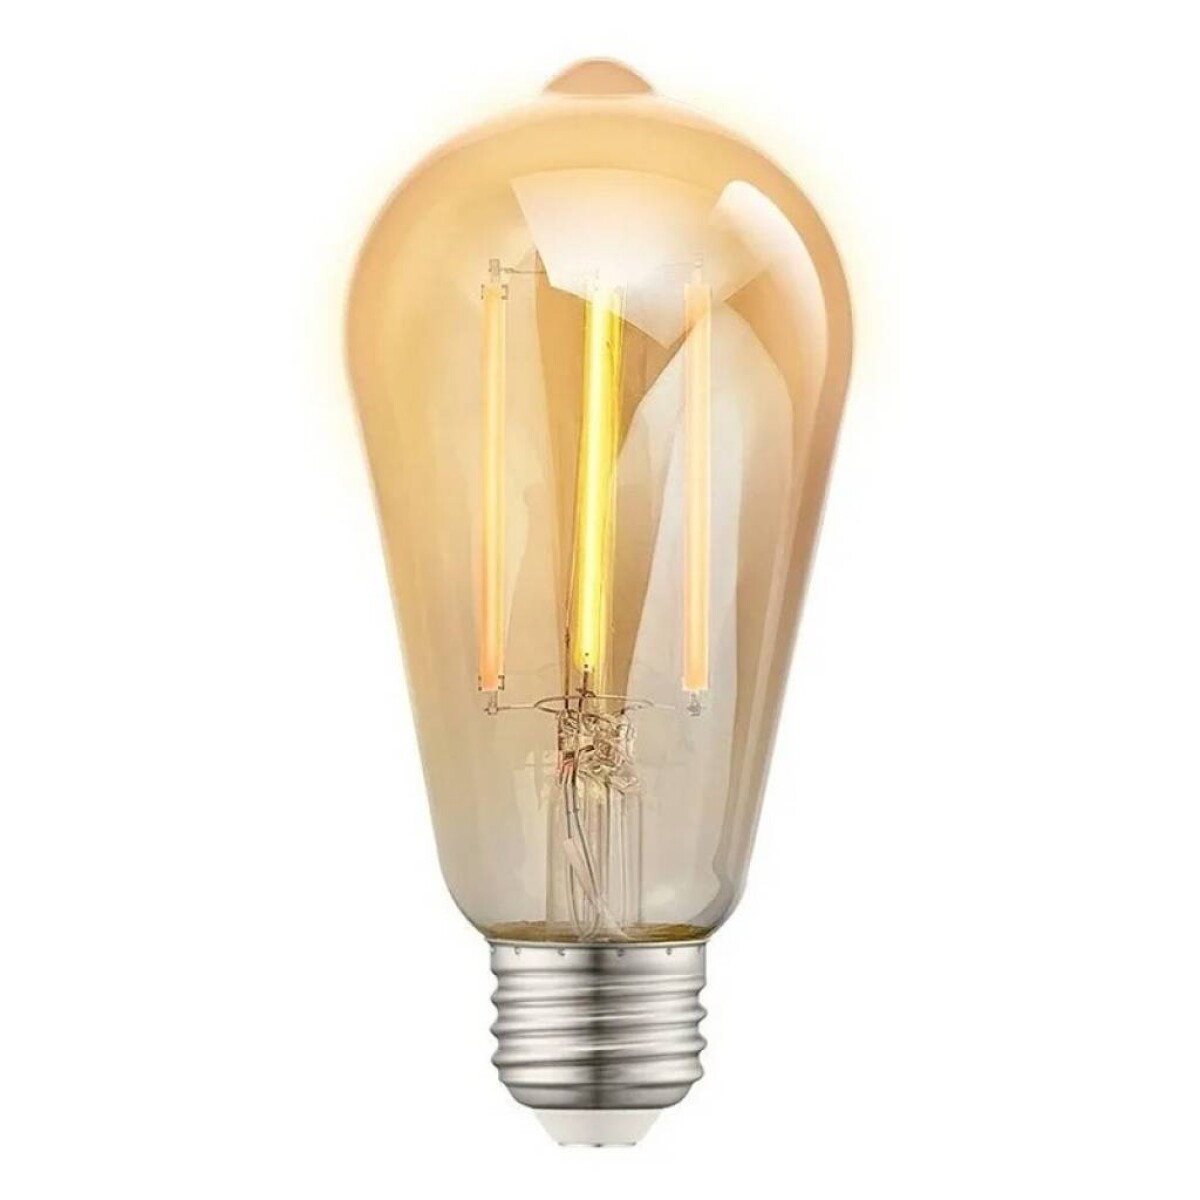 Lámpara filamento vintage nexxt home smart wi-fi led 220v nhb-a520 - Nexxt home smart wi-fi led ambar filament bulb 220v nhb-a520 